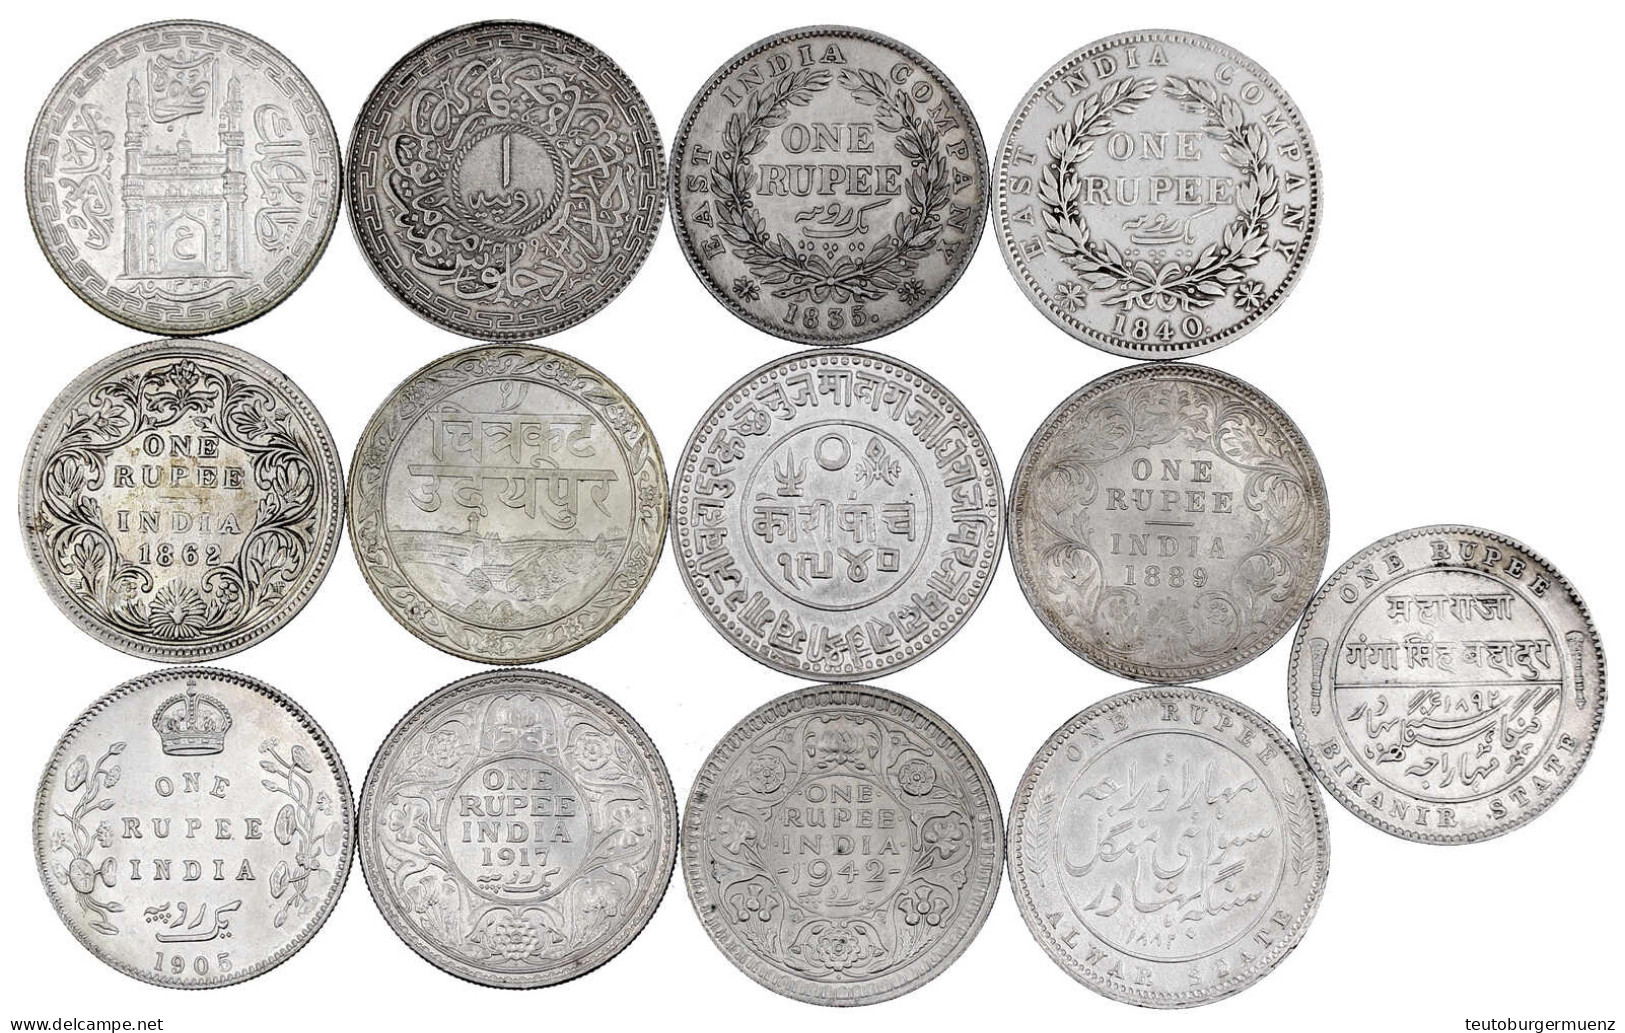 13 Silbermünzen: Rupien Britisch-Indien 1835, 1840, 1862, 1889, 1905, 1917, 1942, Alwar 1882, Bikanir 1892, Hyderabad AH - India